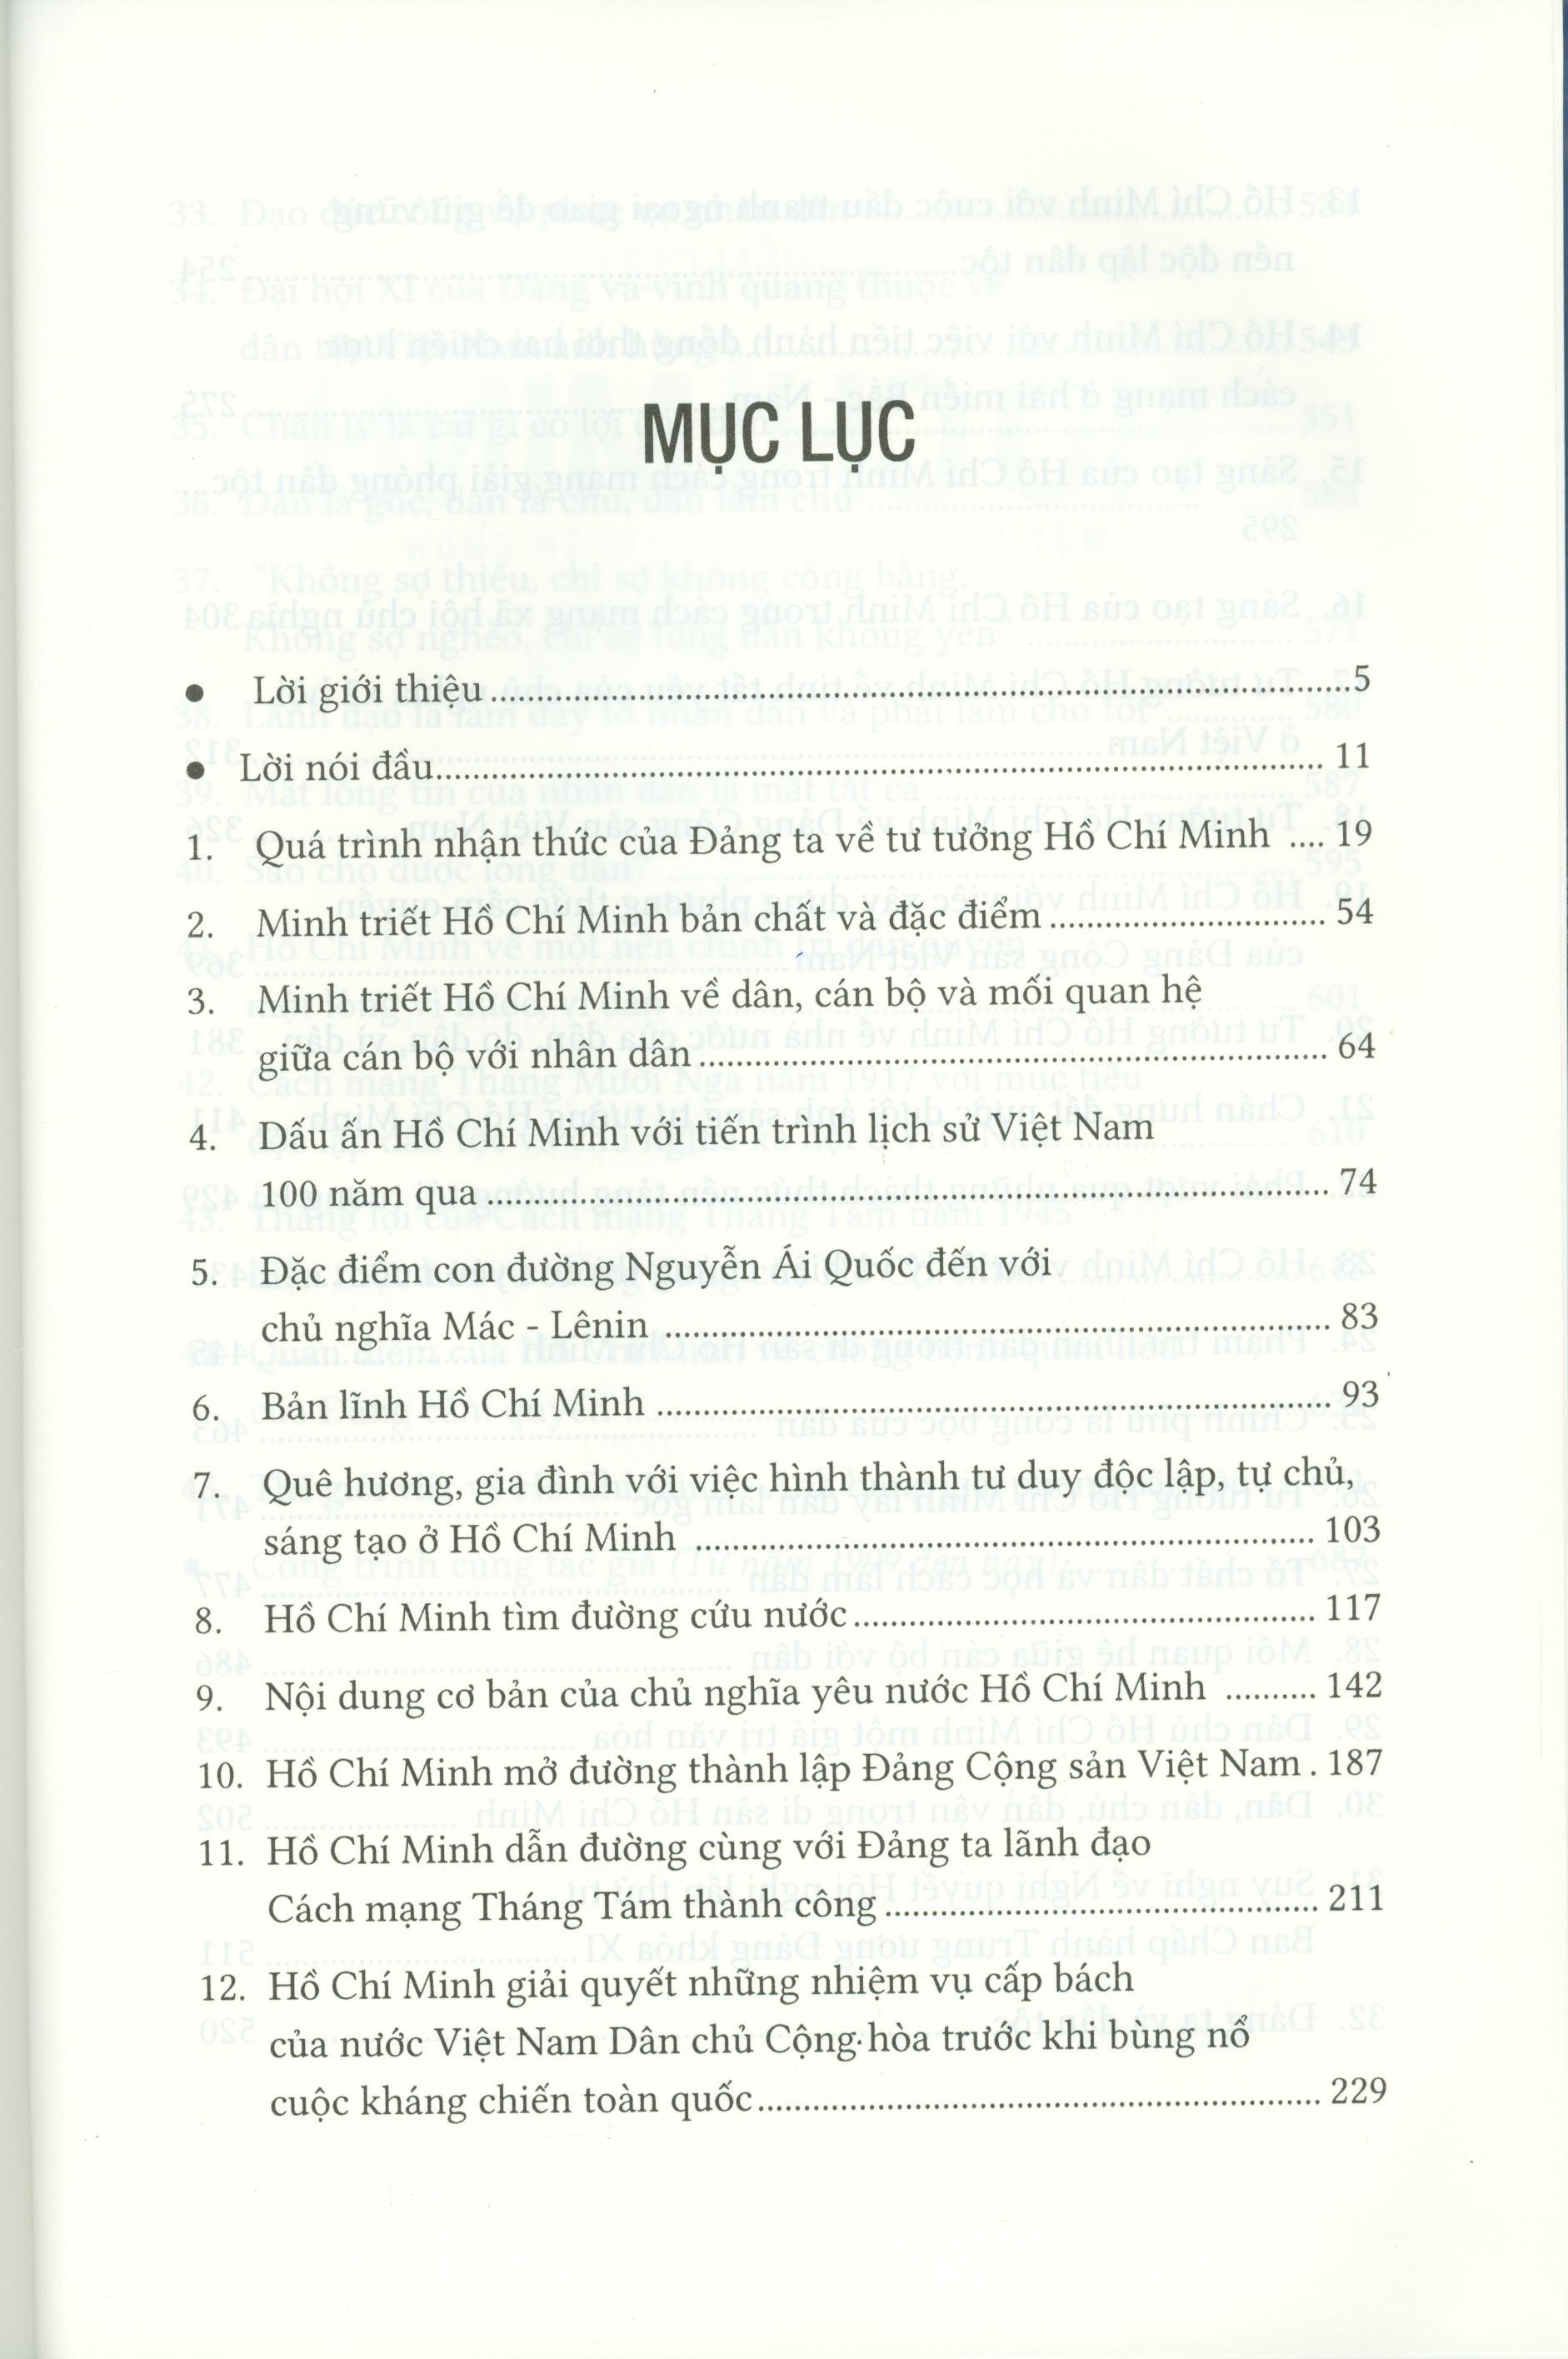 Nghiên Cứu Hồ Chí Minh Một Số Công Trình Tuyển Chọn - Tập 1: Chính Trị - Tư Tưởng - Tổ Chức Bìa Cứng PDF